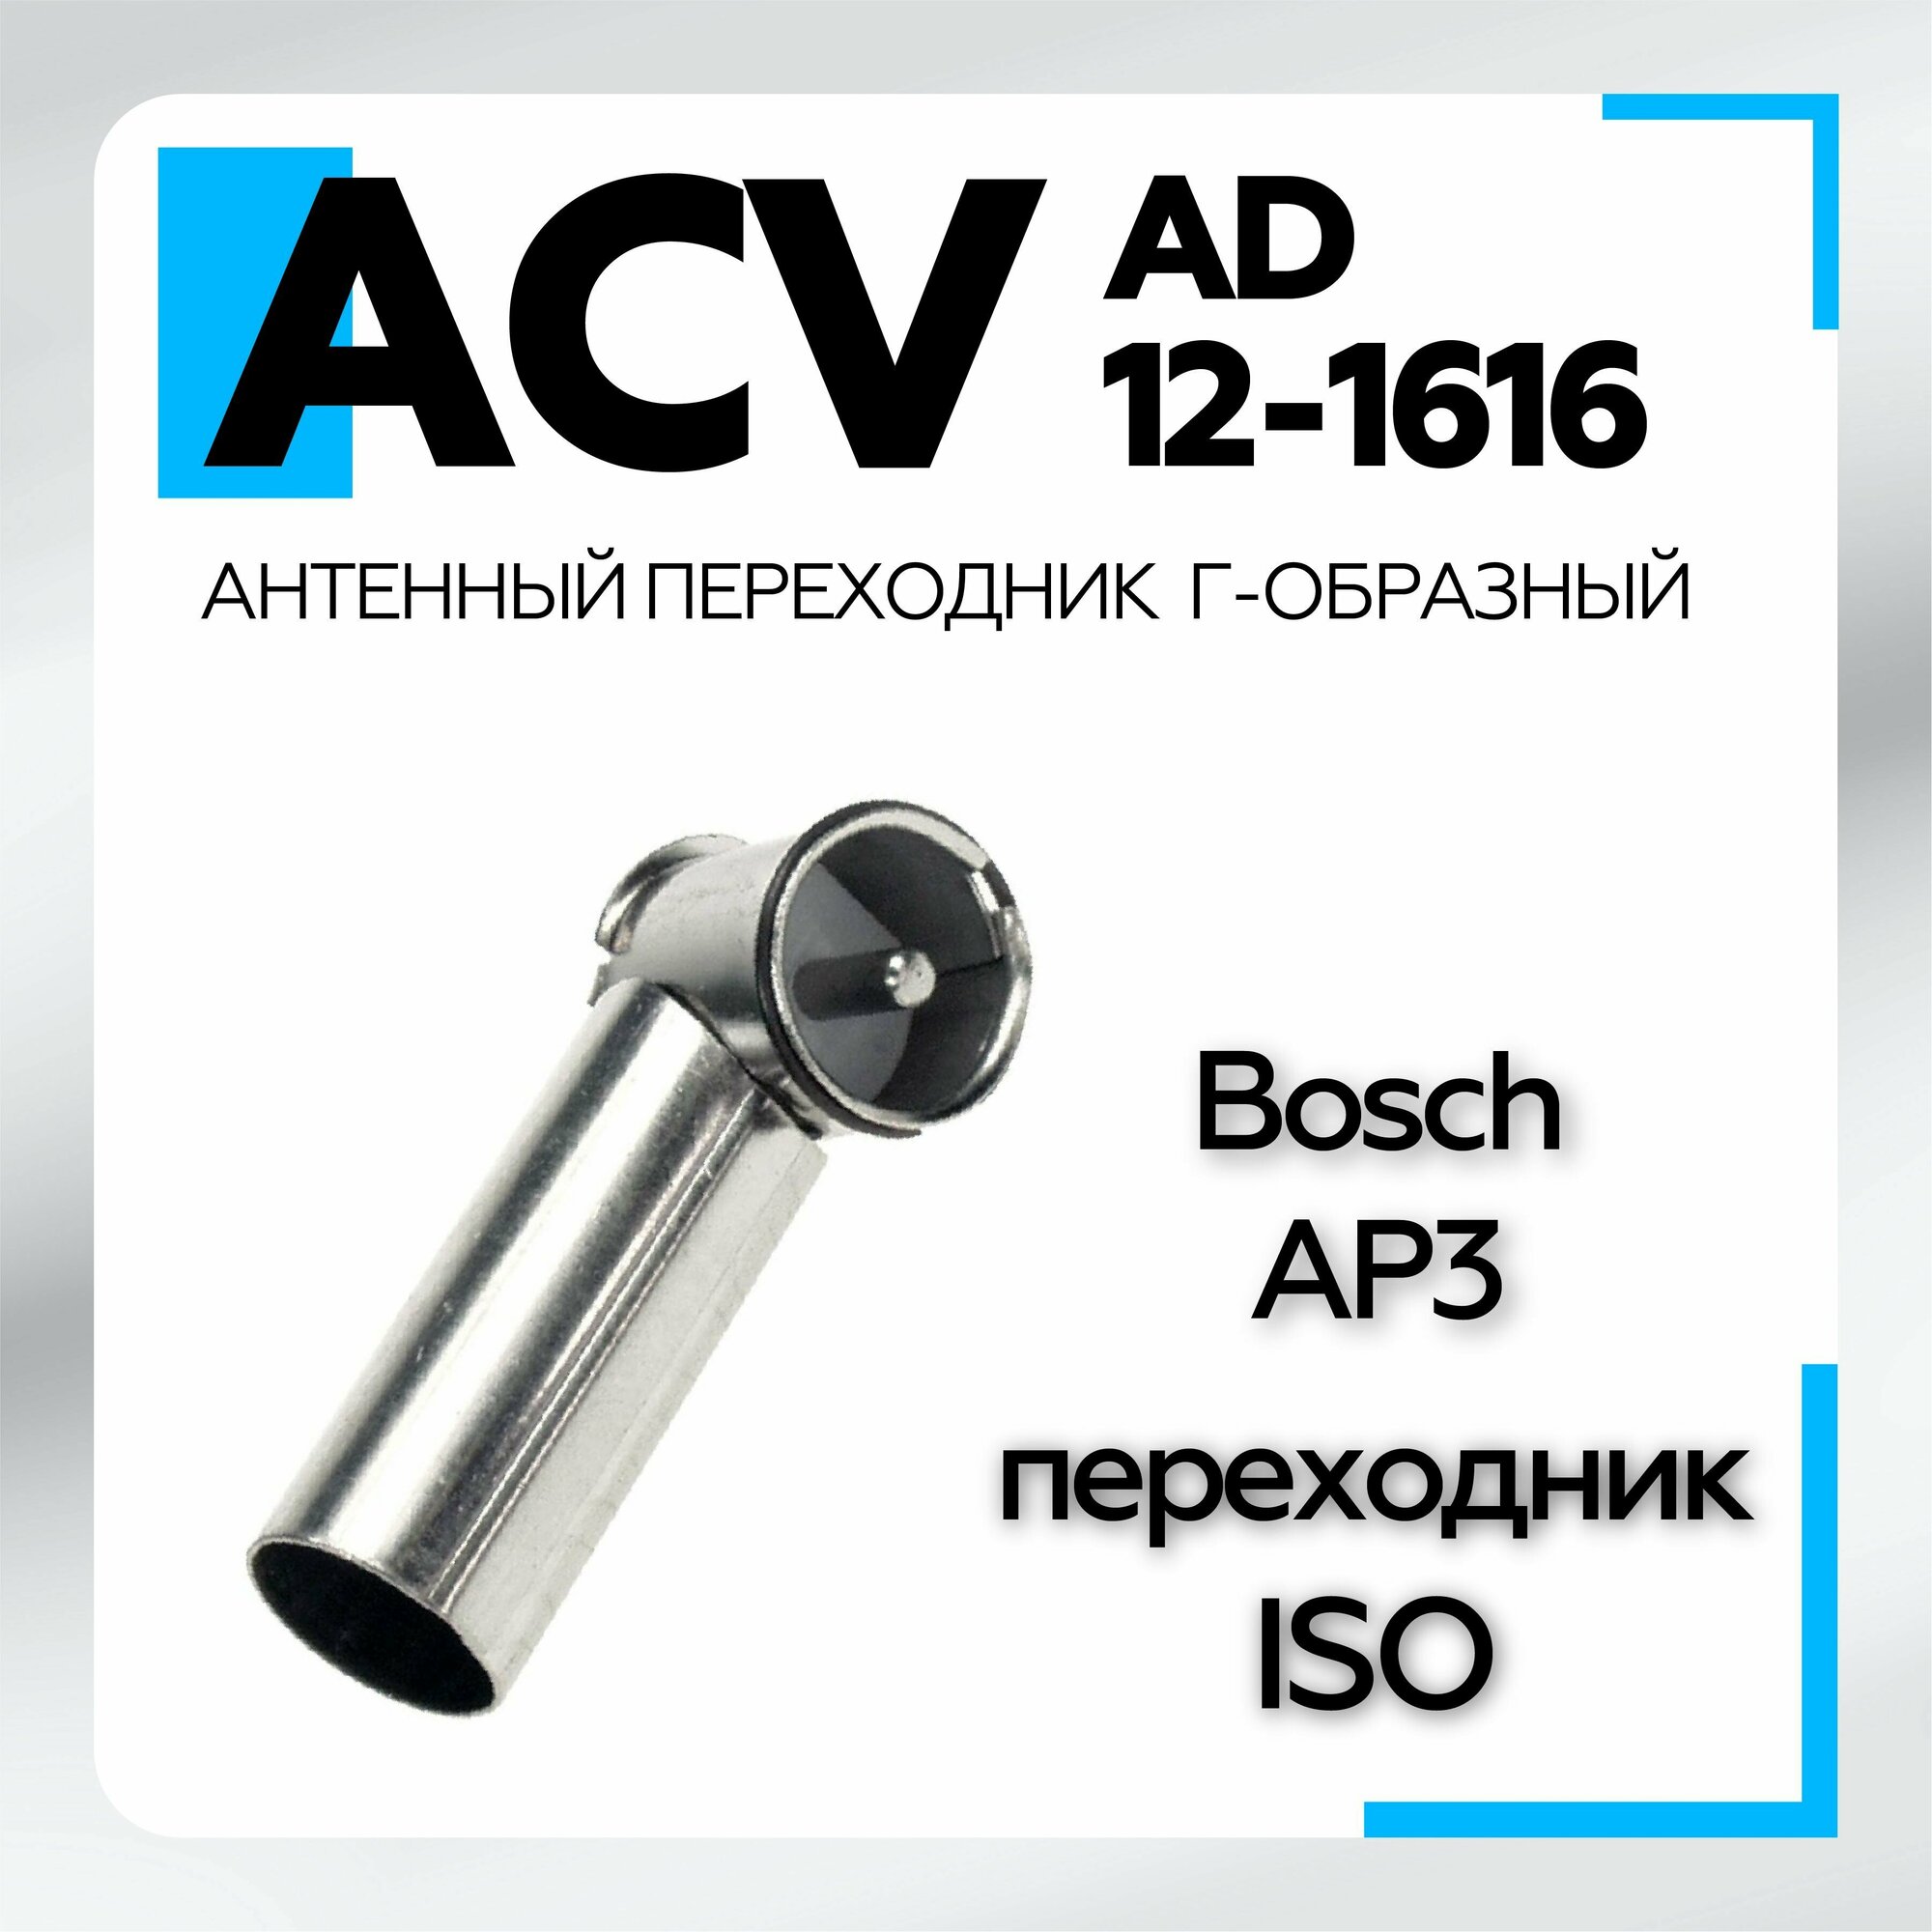 Антенный переходник AD12-1616/Intro ANT-10 (Bosch AP3, Г-образный, ISO-DIN)